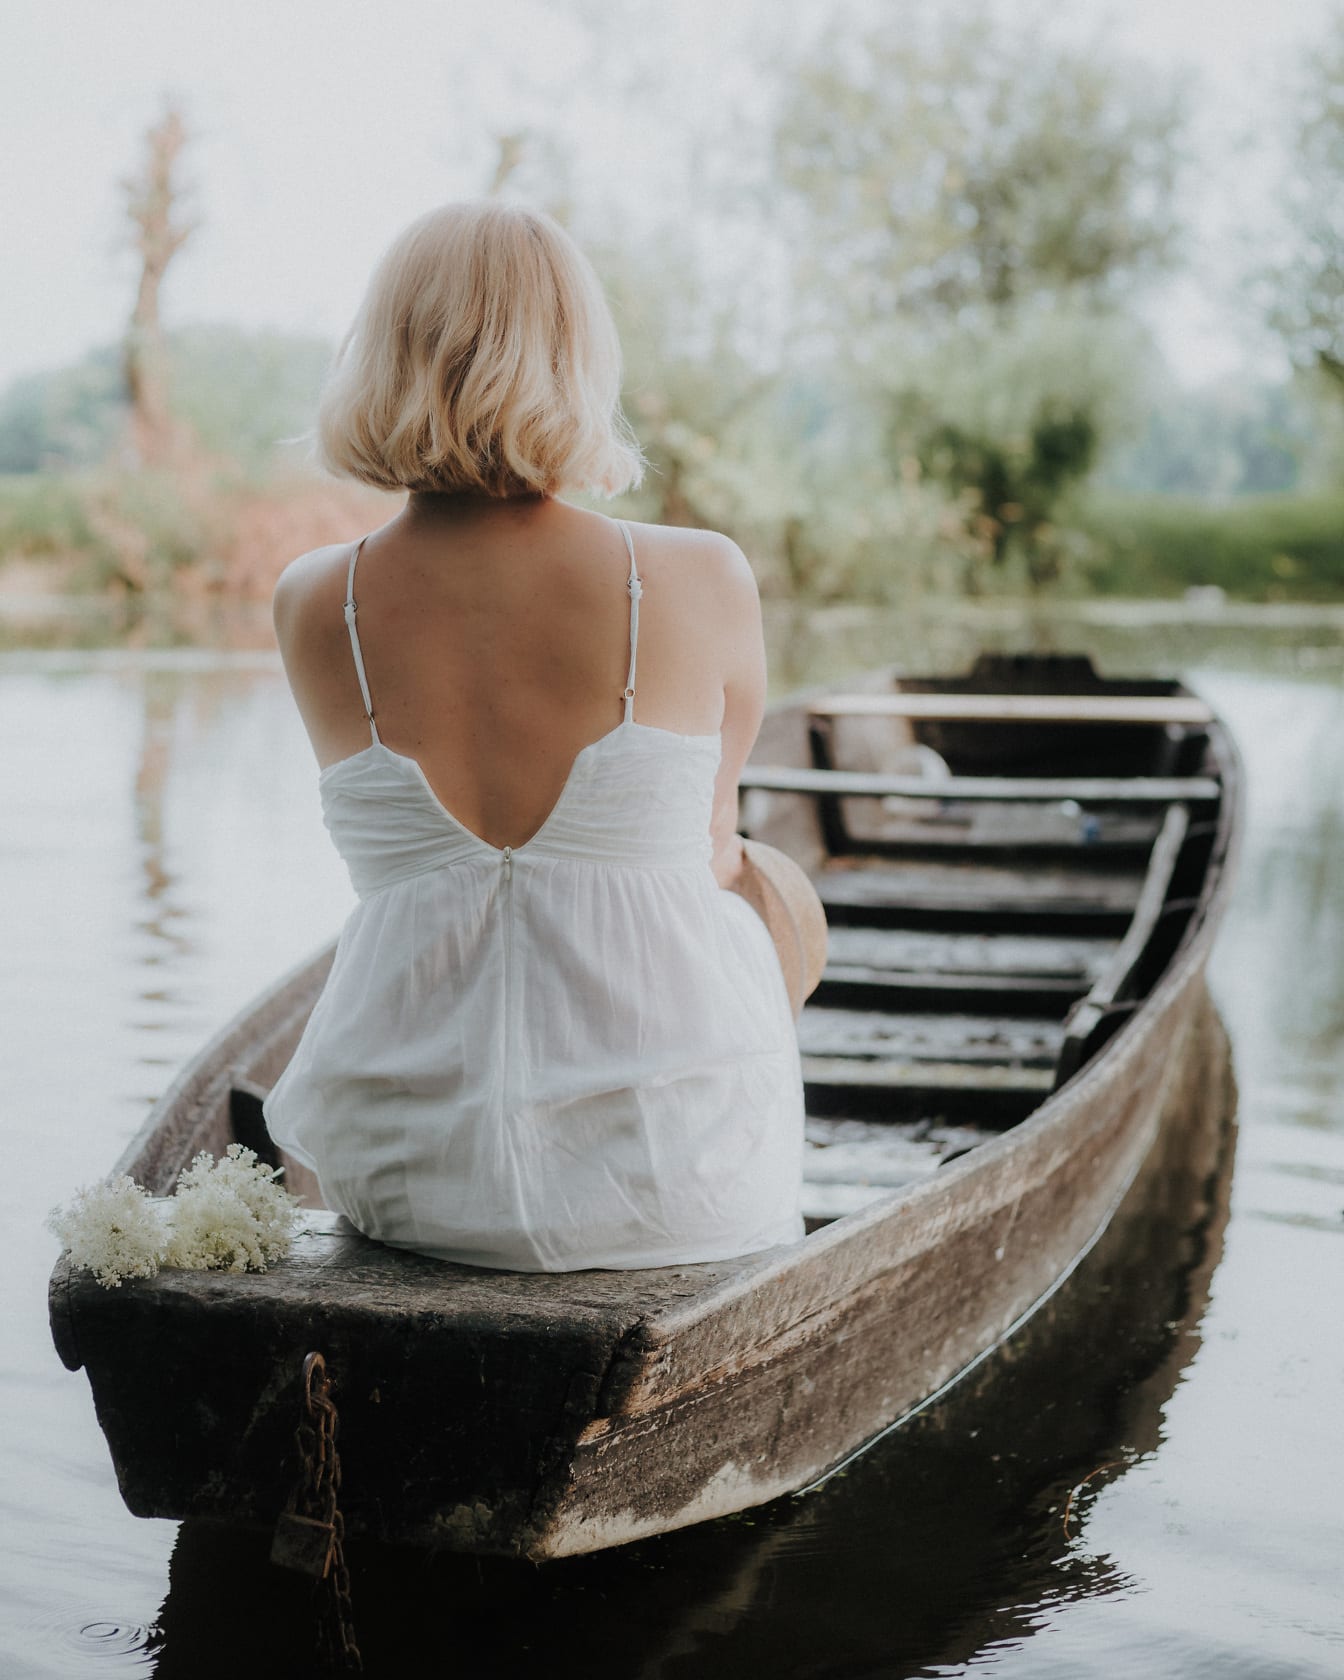 Tânără blondă în rochie albă stând în barca de pescuit